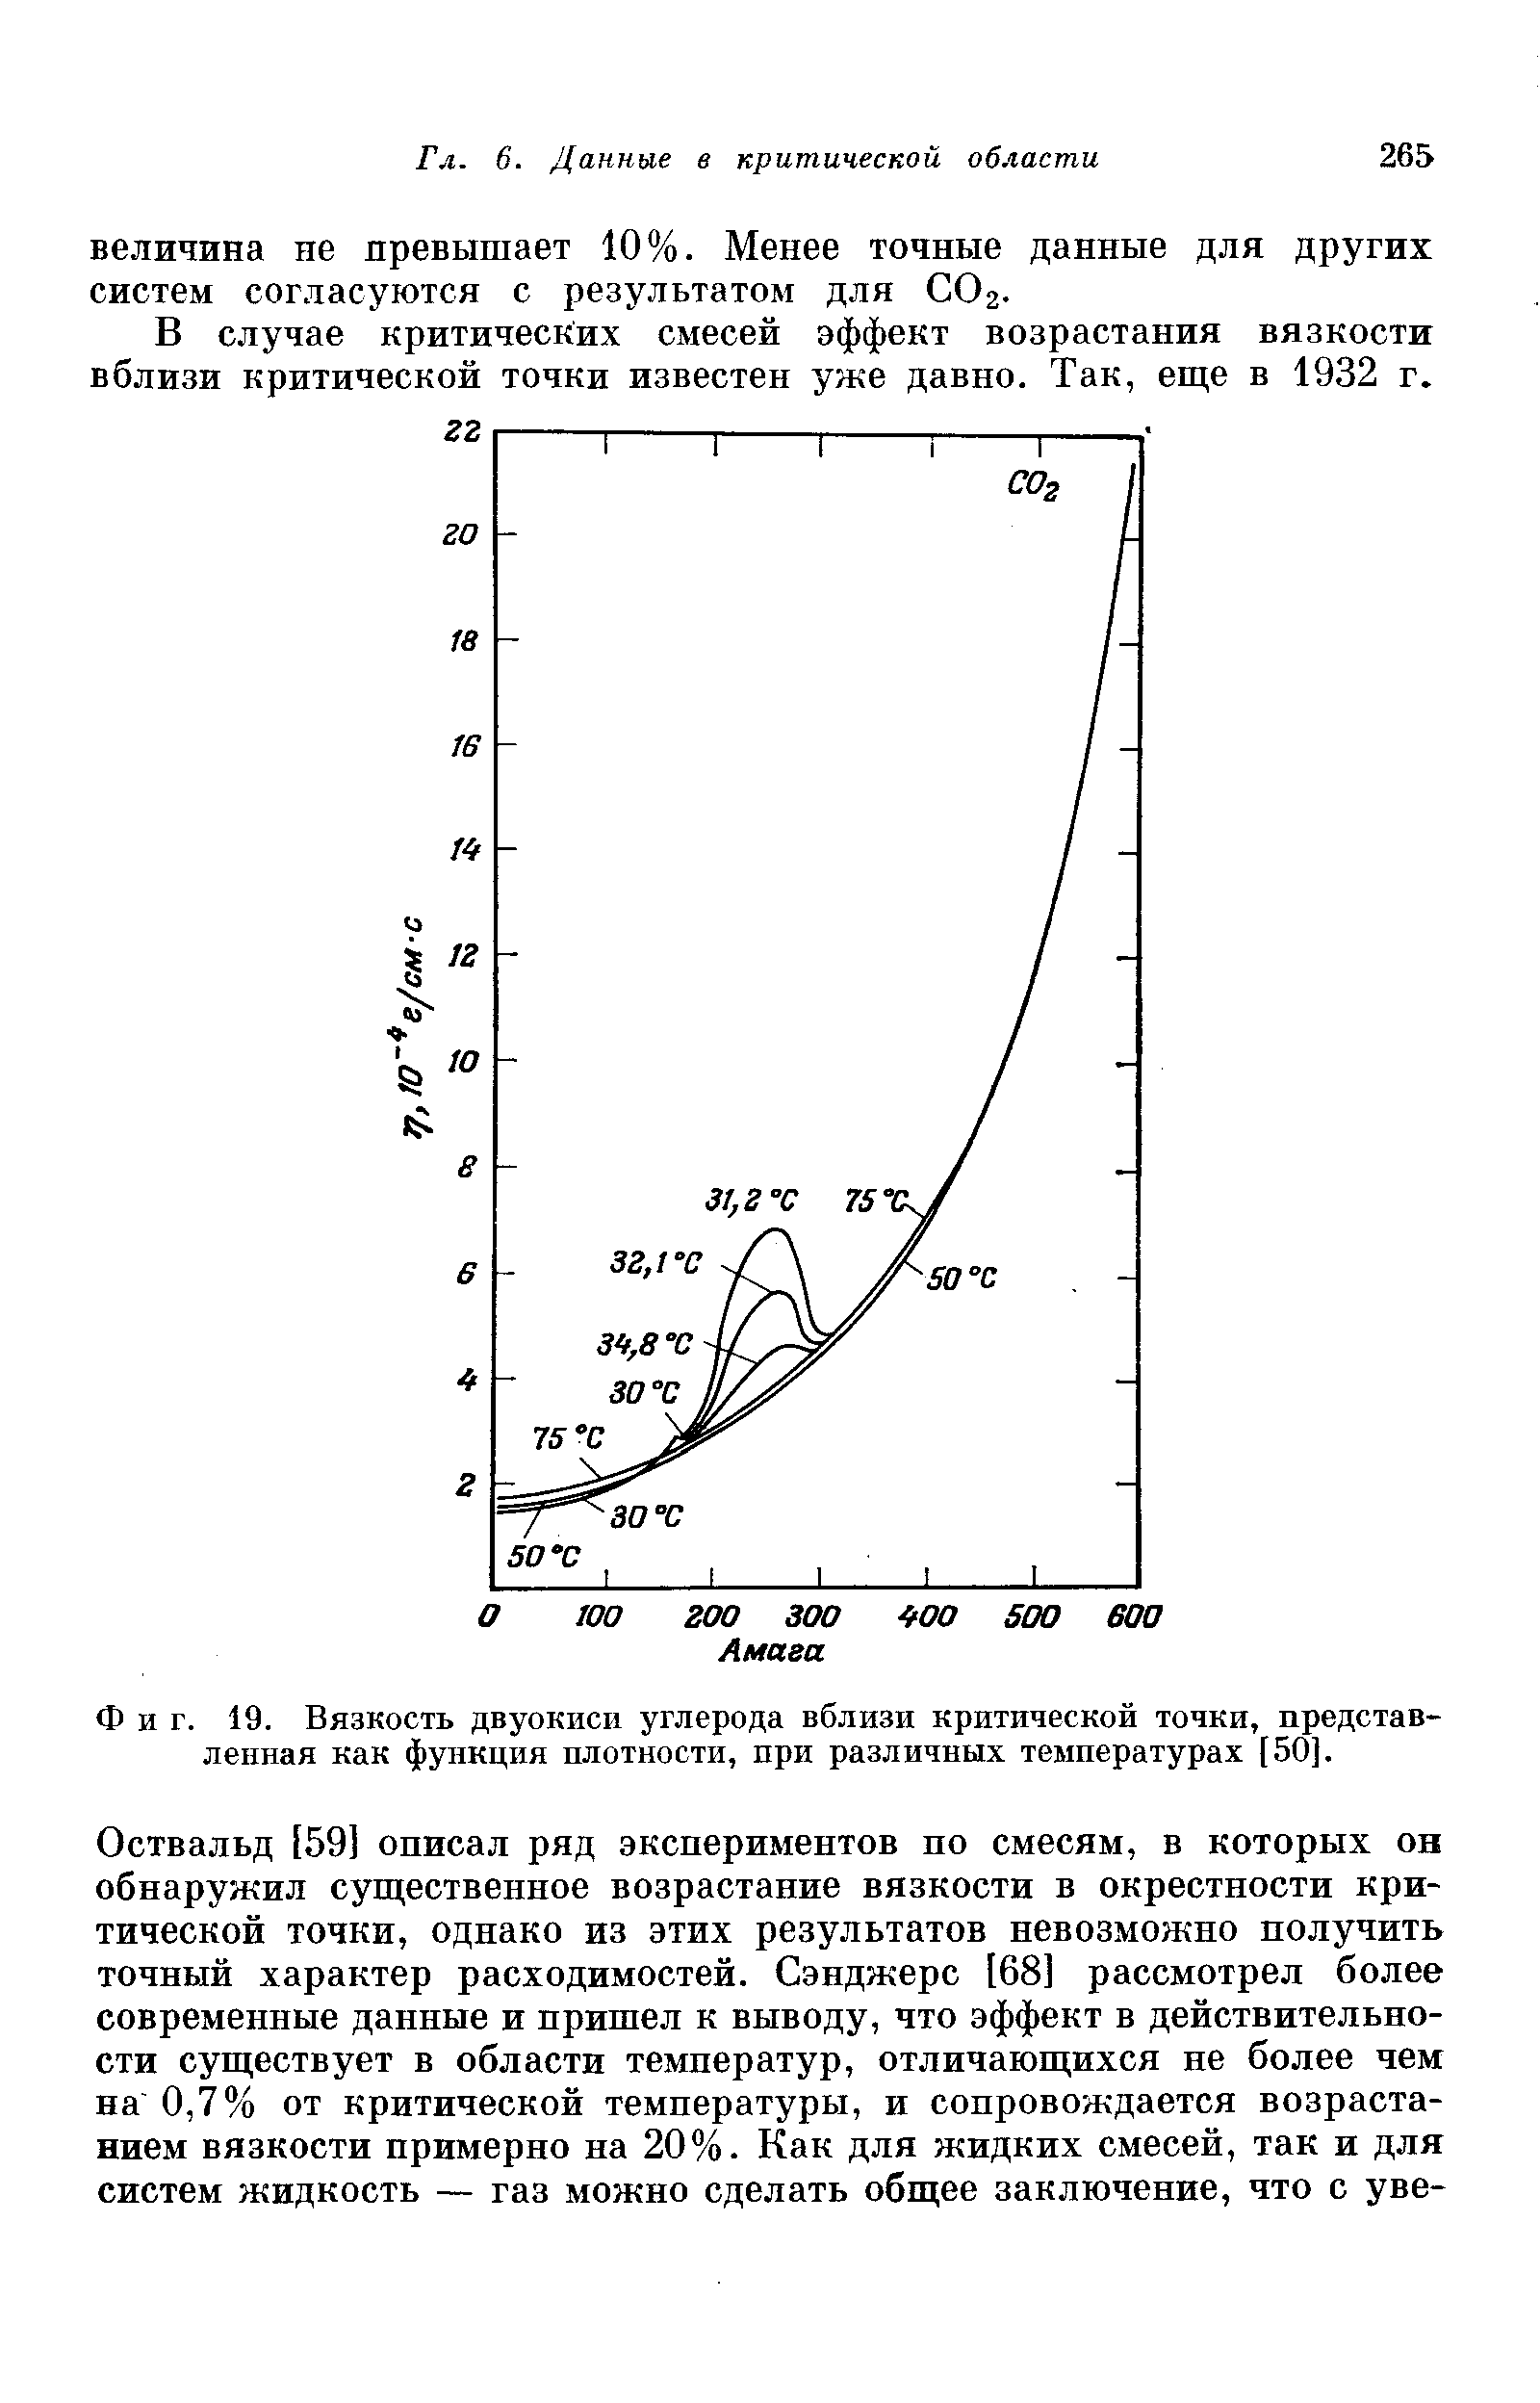 Фиг. 19. Вязкость двуокиси углерода вблизи <a href="/info/21132">критической точки</a>, представленная как функция плотности, при различных температурах [50].
